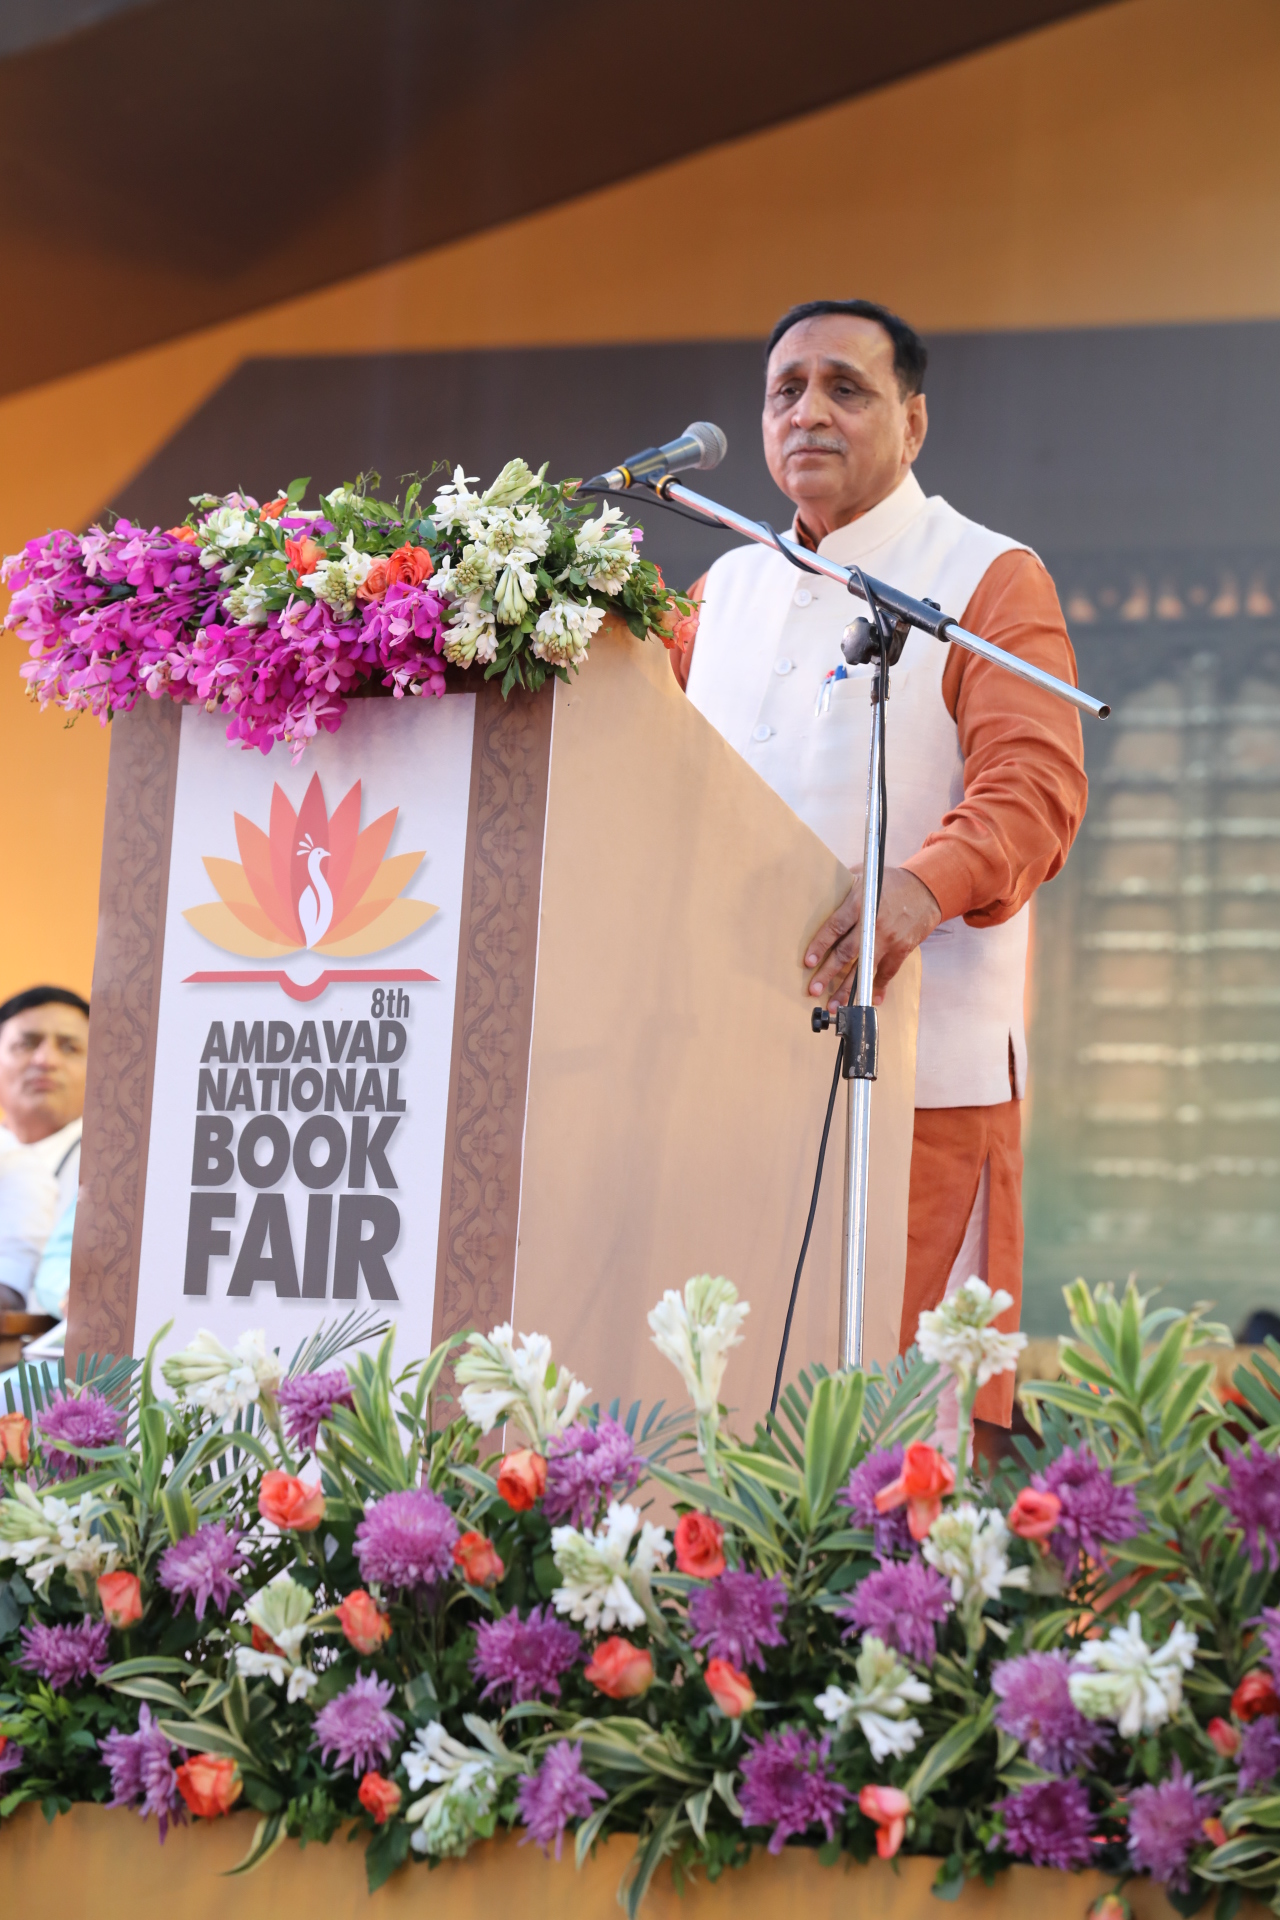 Ahmedabad National book fair:  Social Media के दौर में नहीं छूटना चाहिए पुस्तकों का साथ: Rupani